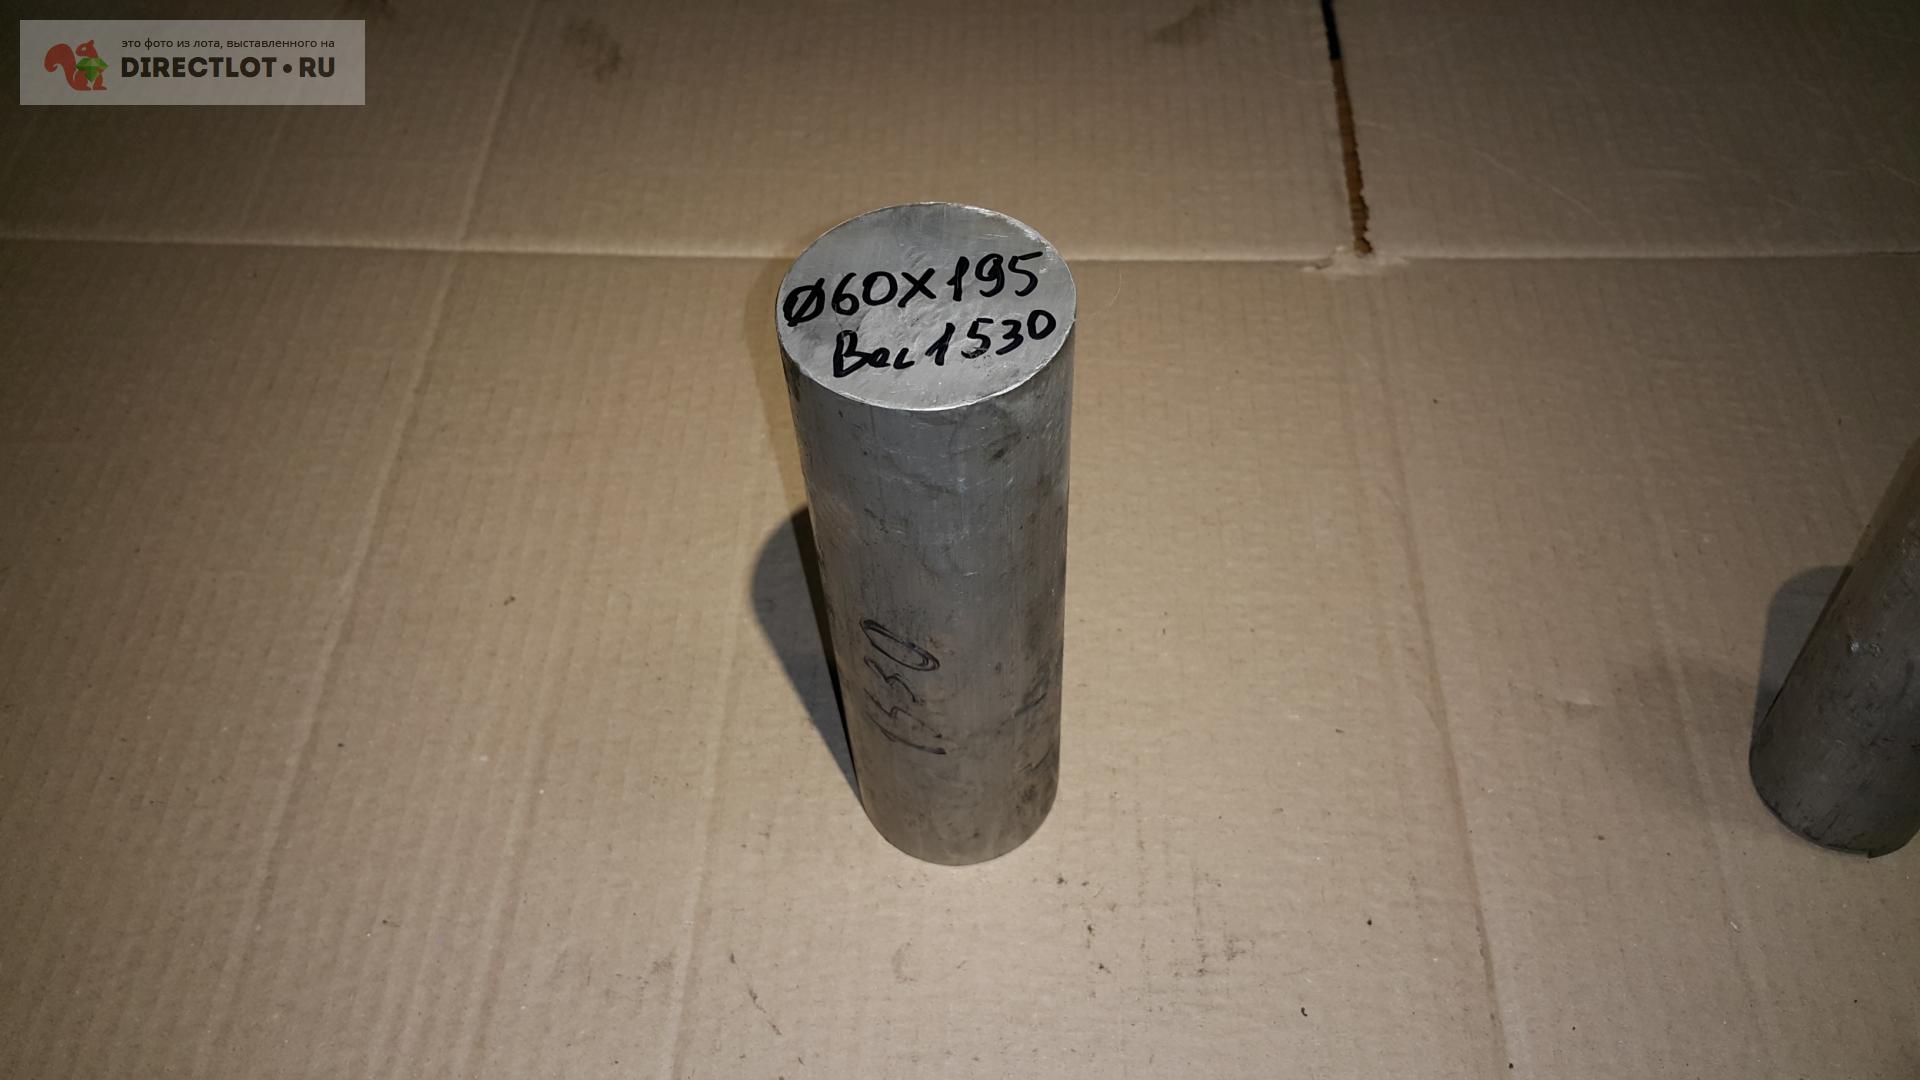 Дюраль (алюминий) болванка - заготовка кругляк Ф60X195 мм . Вес 1.53 кг .